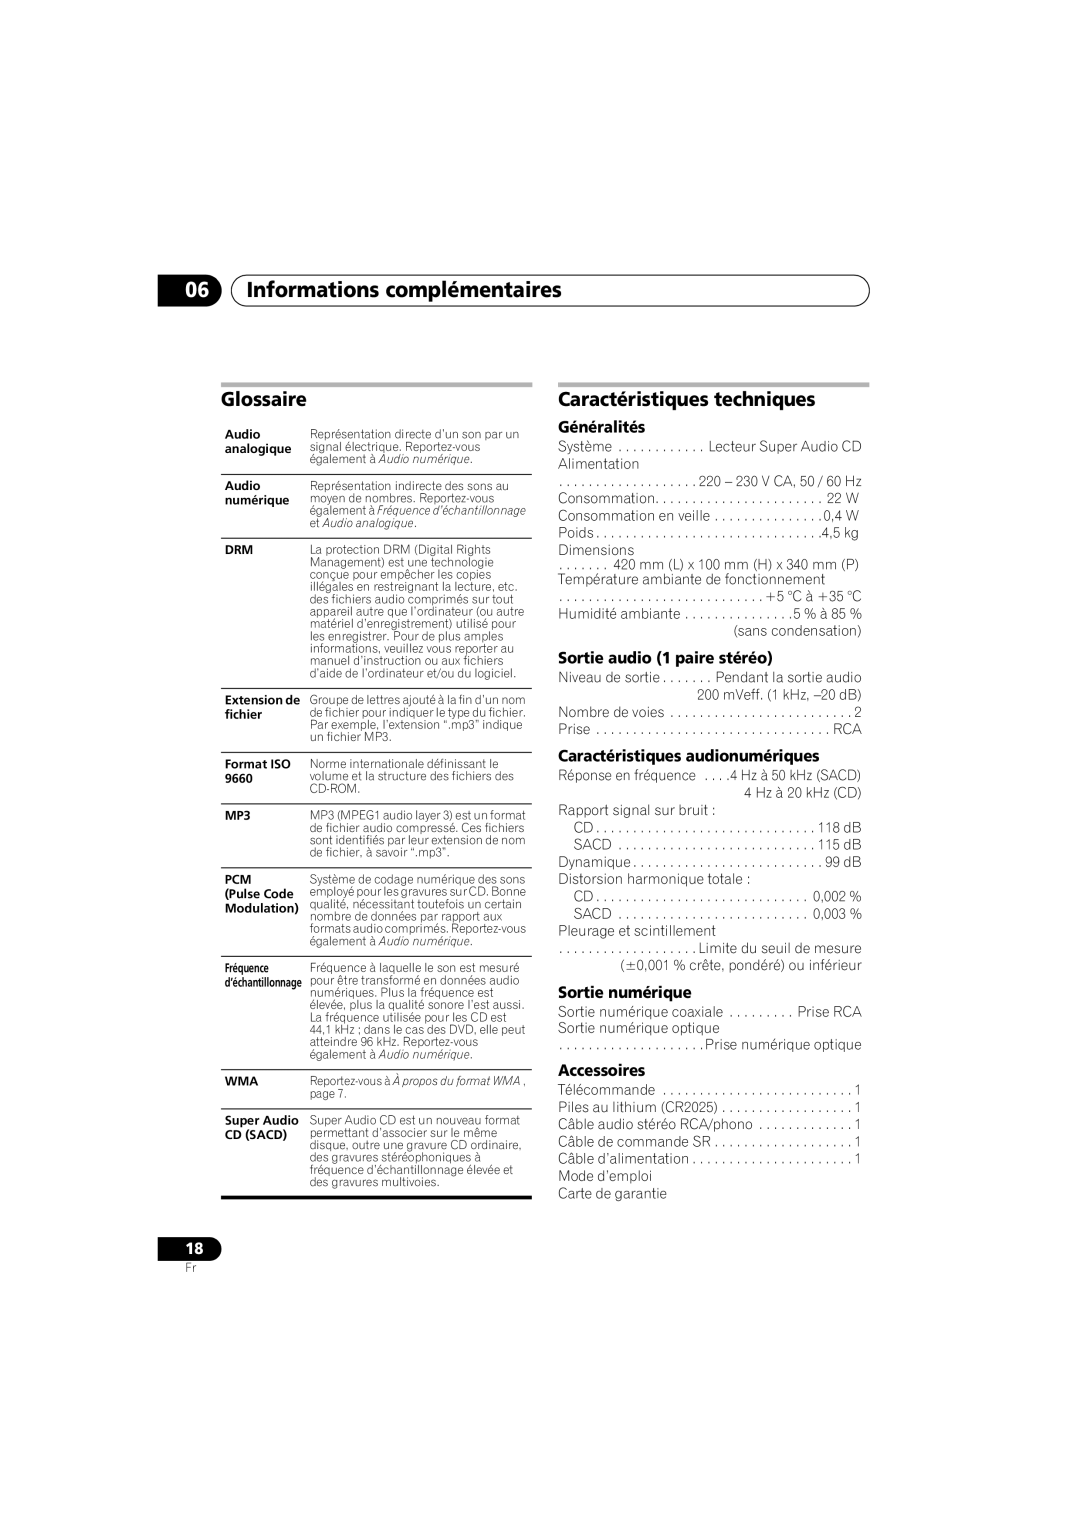 Pioneer PD-D6-J Glossaire, Caractéristiques techniques, 06Informations complémentaires, Généralités, Sortie numérique 